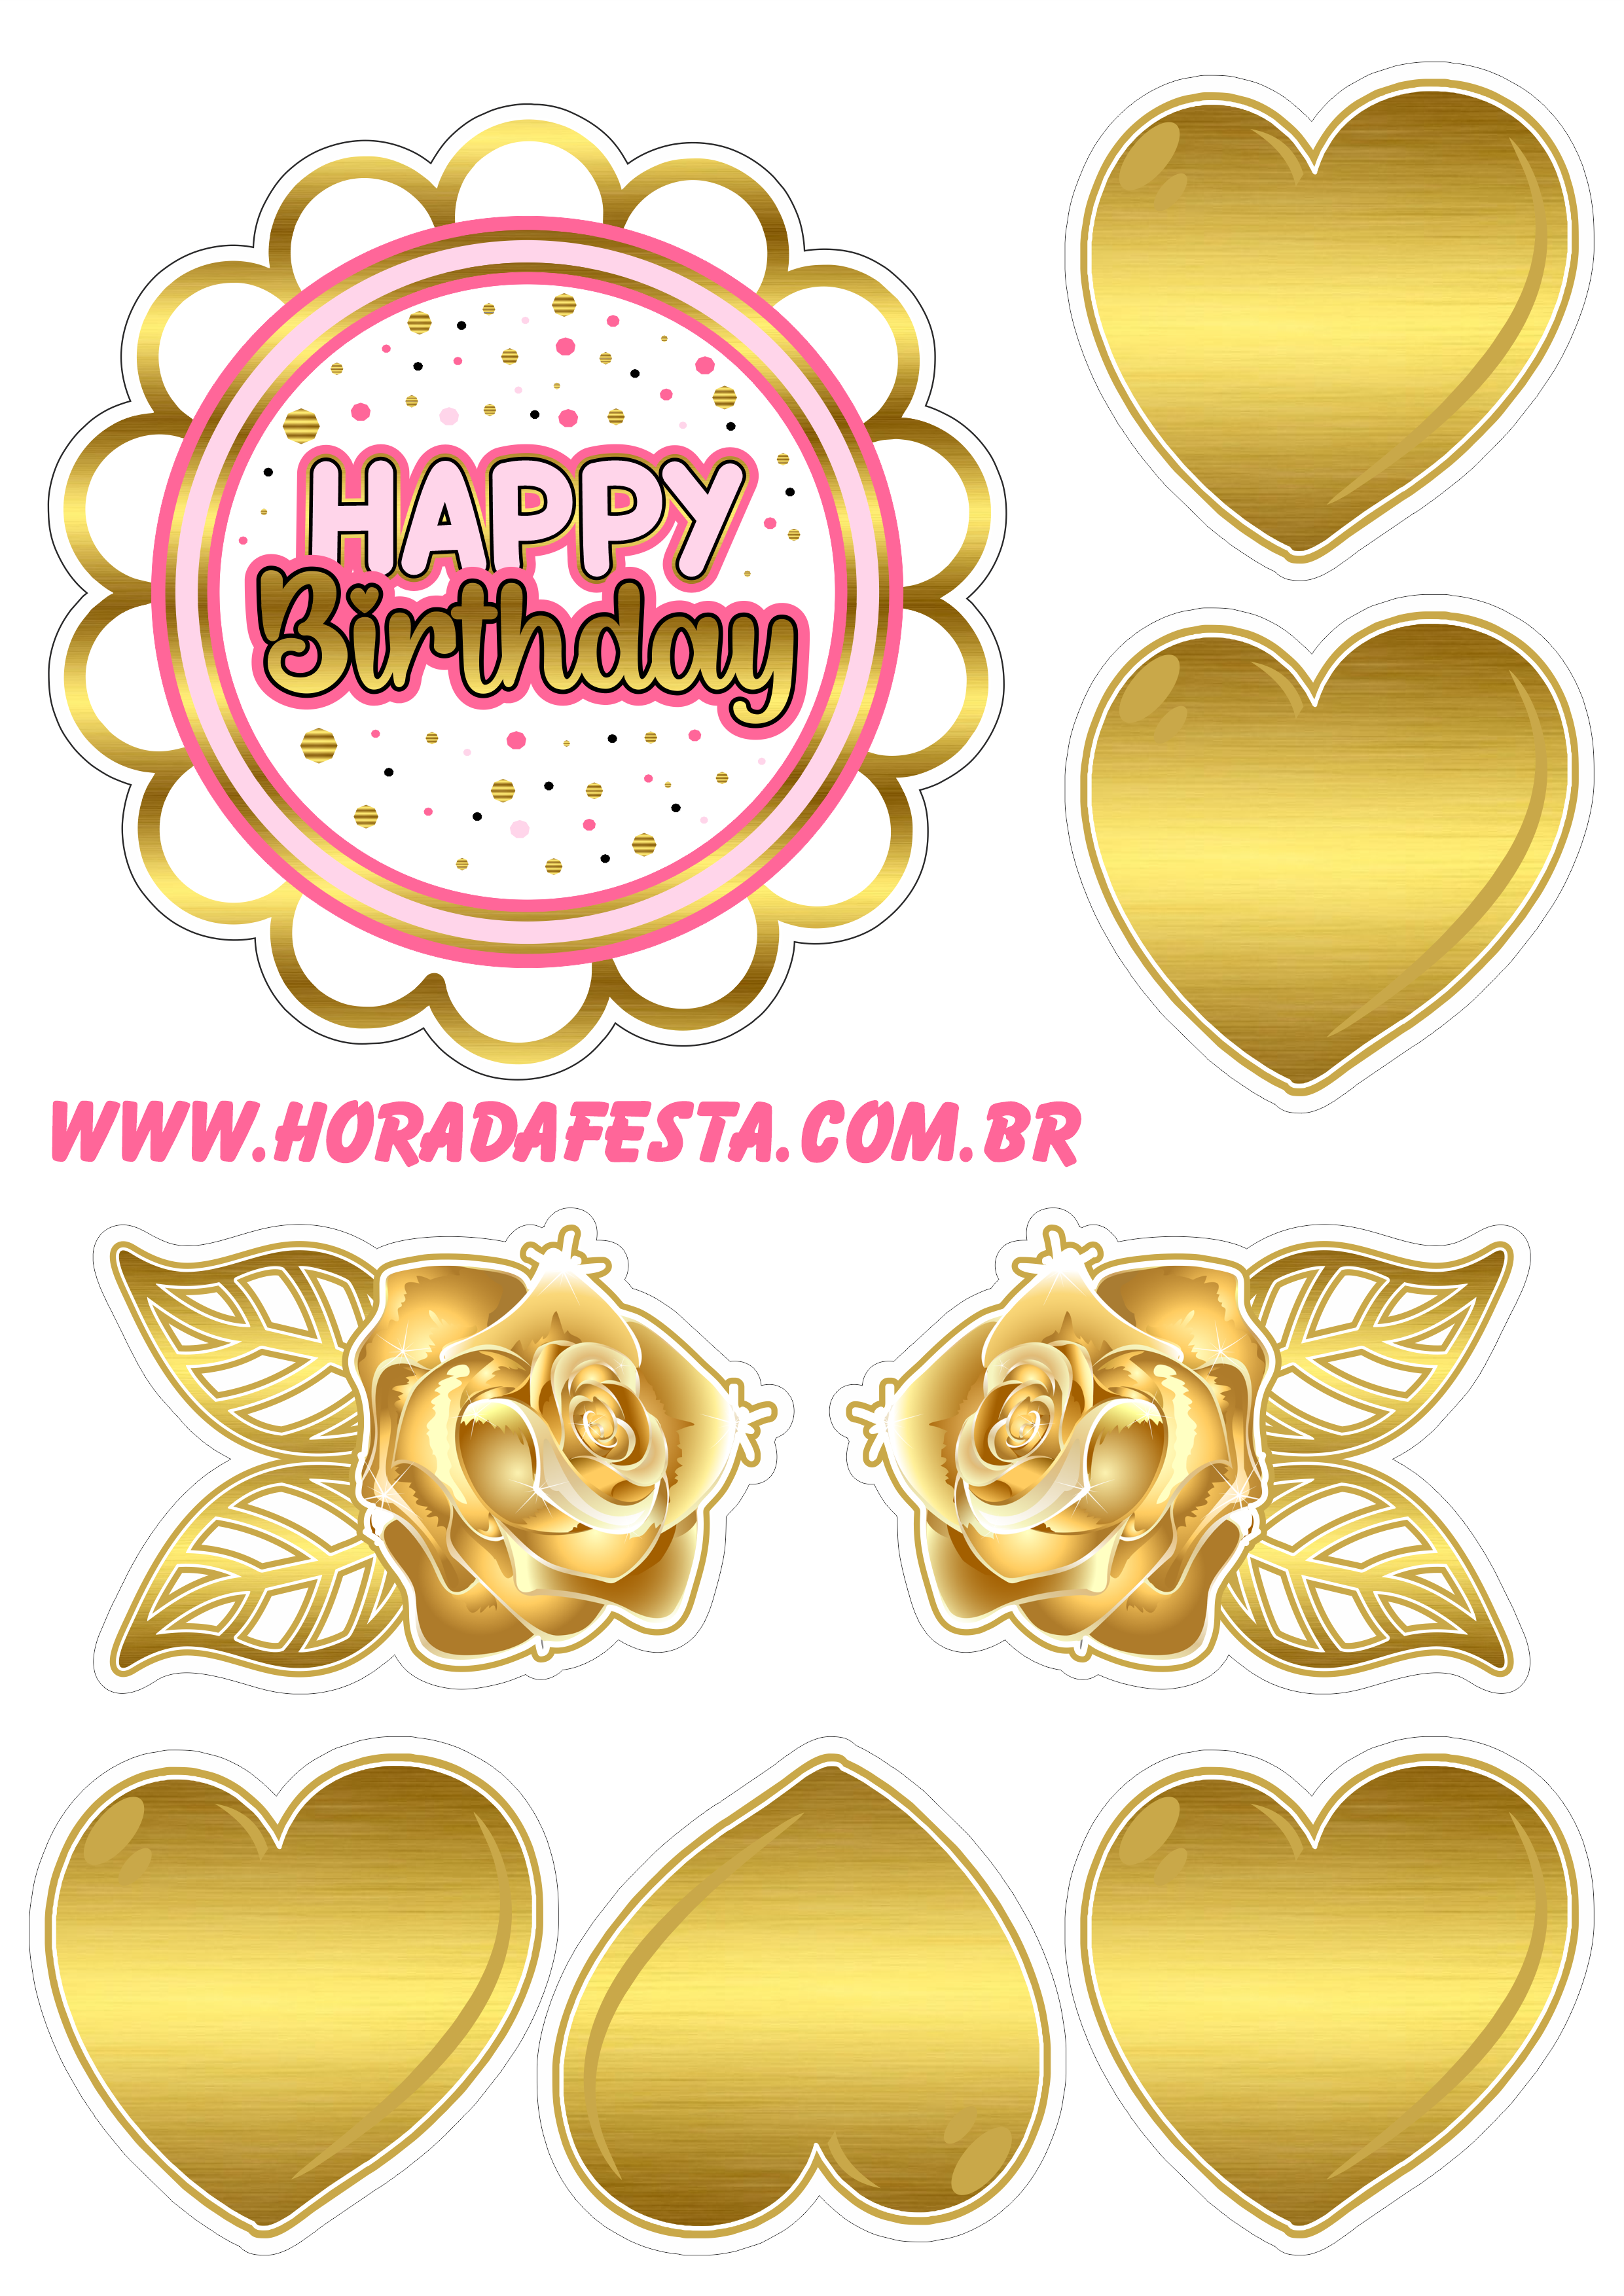 Happy birthday topo de bolo de aniversário dourado com rosa corações e flores fazendo a nossa festa renda extra com personalizados png